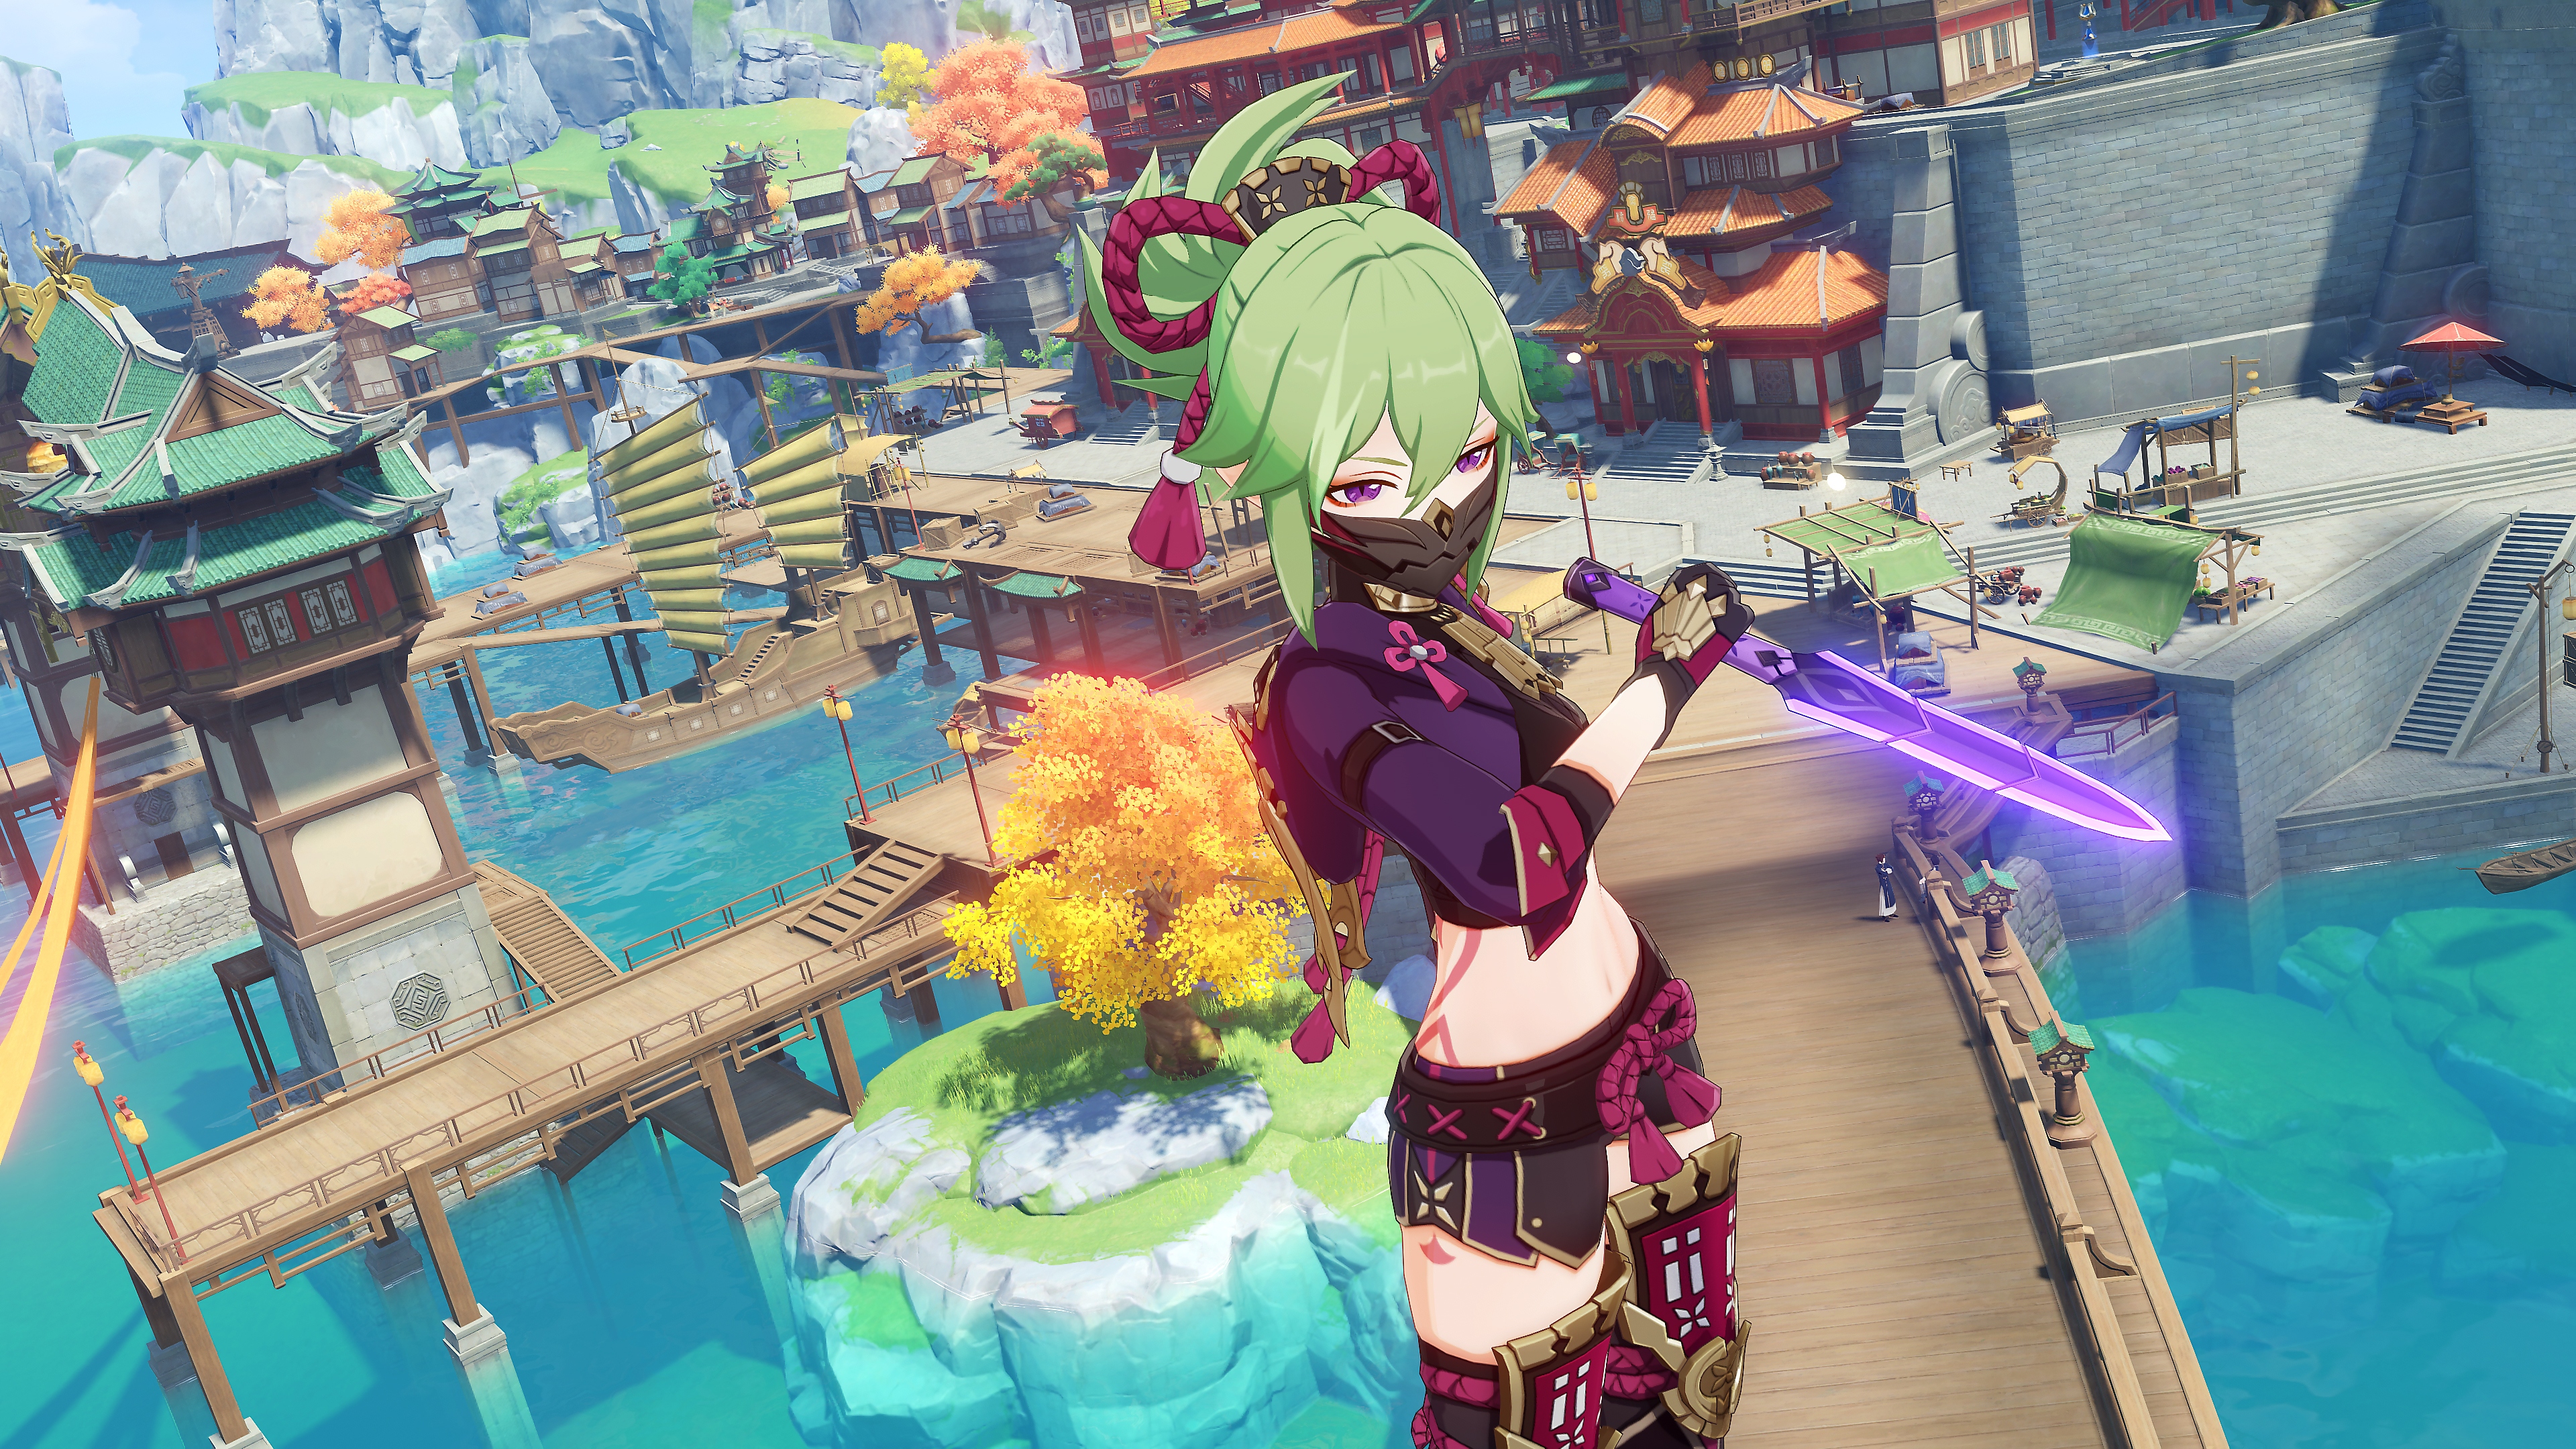 Impacto de GenShin: Captura de pantalla de la actualización 2.7 que muestra a un personaje con cabello verde empuñando una espada morada brilante